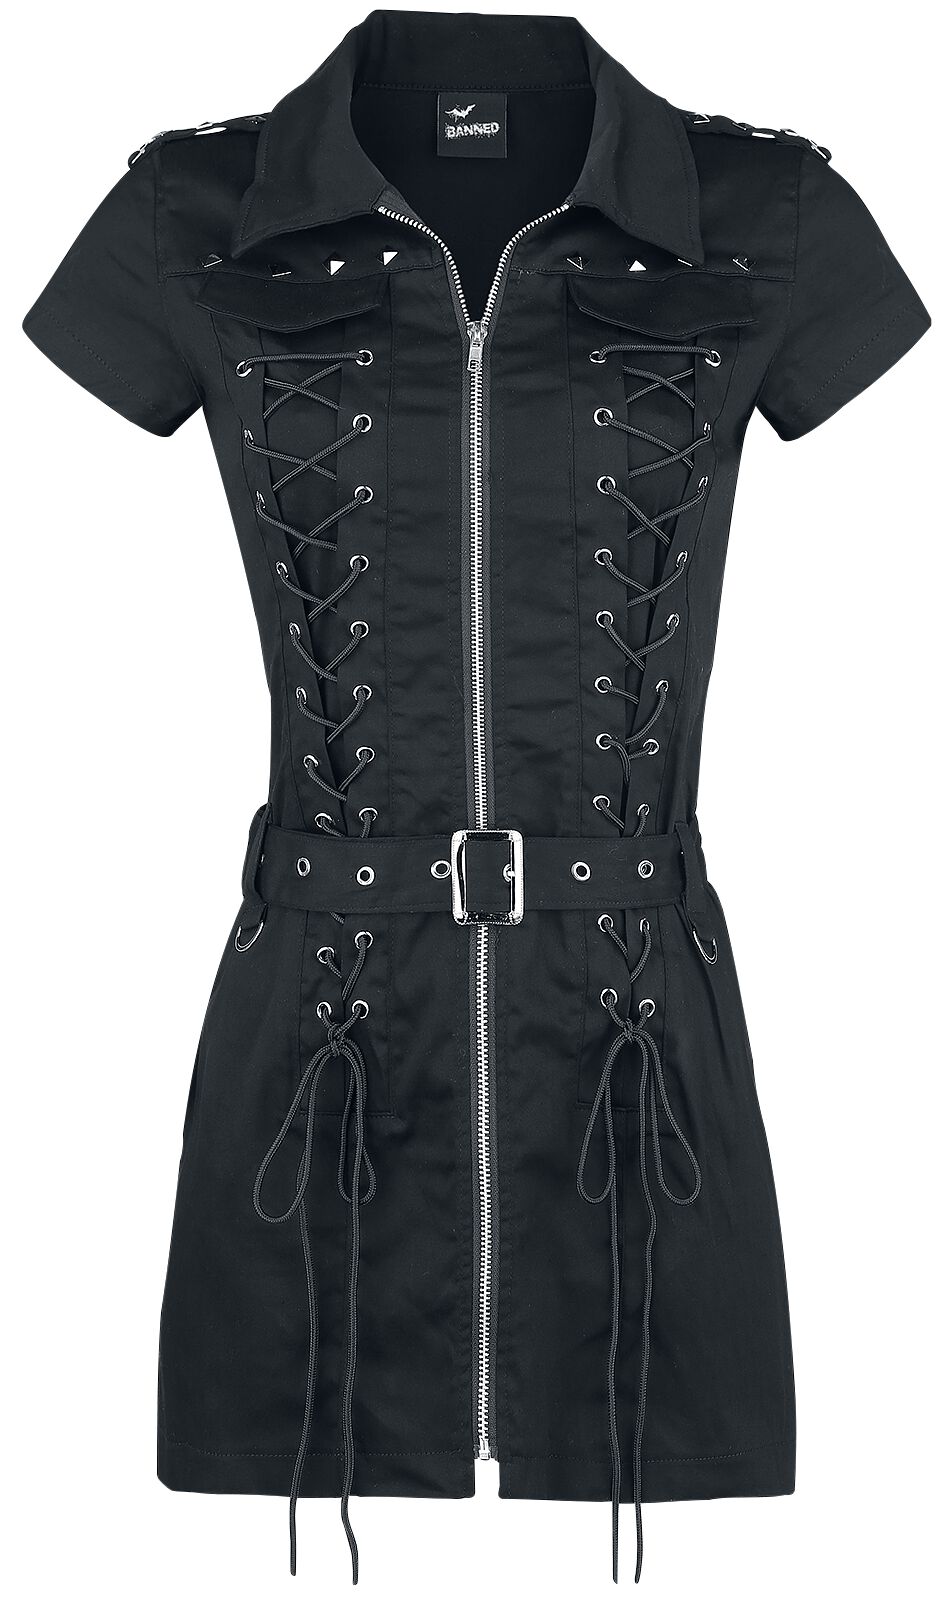 Banned Alternative - Gothic Kurzes Kleid - Mod Dress - XS bis XL - für Damen - Größe L - schwarz